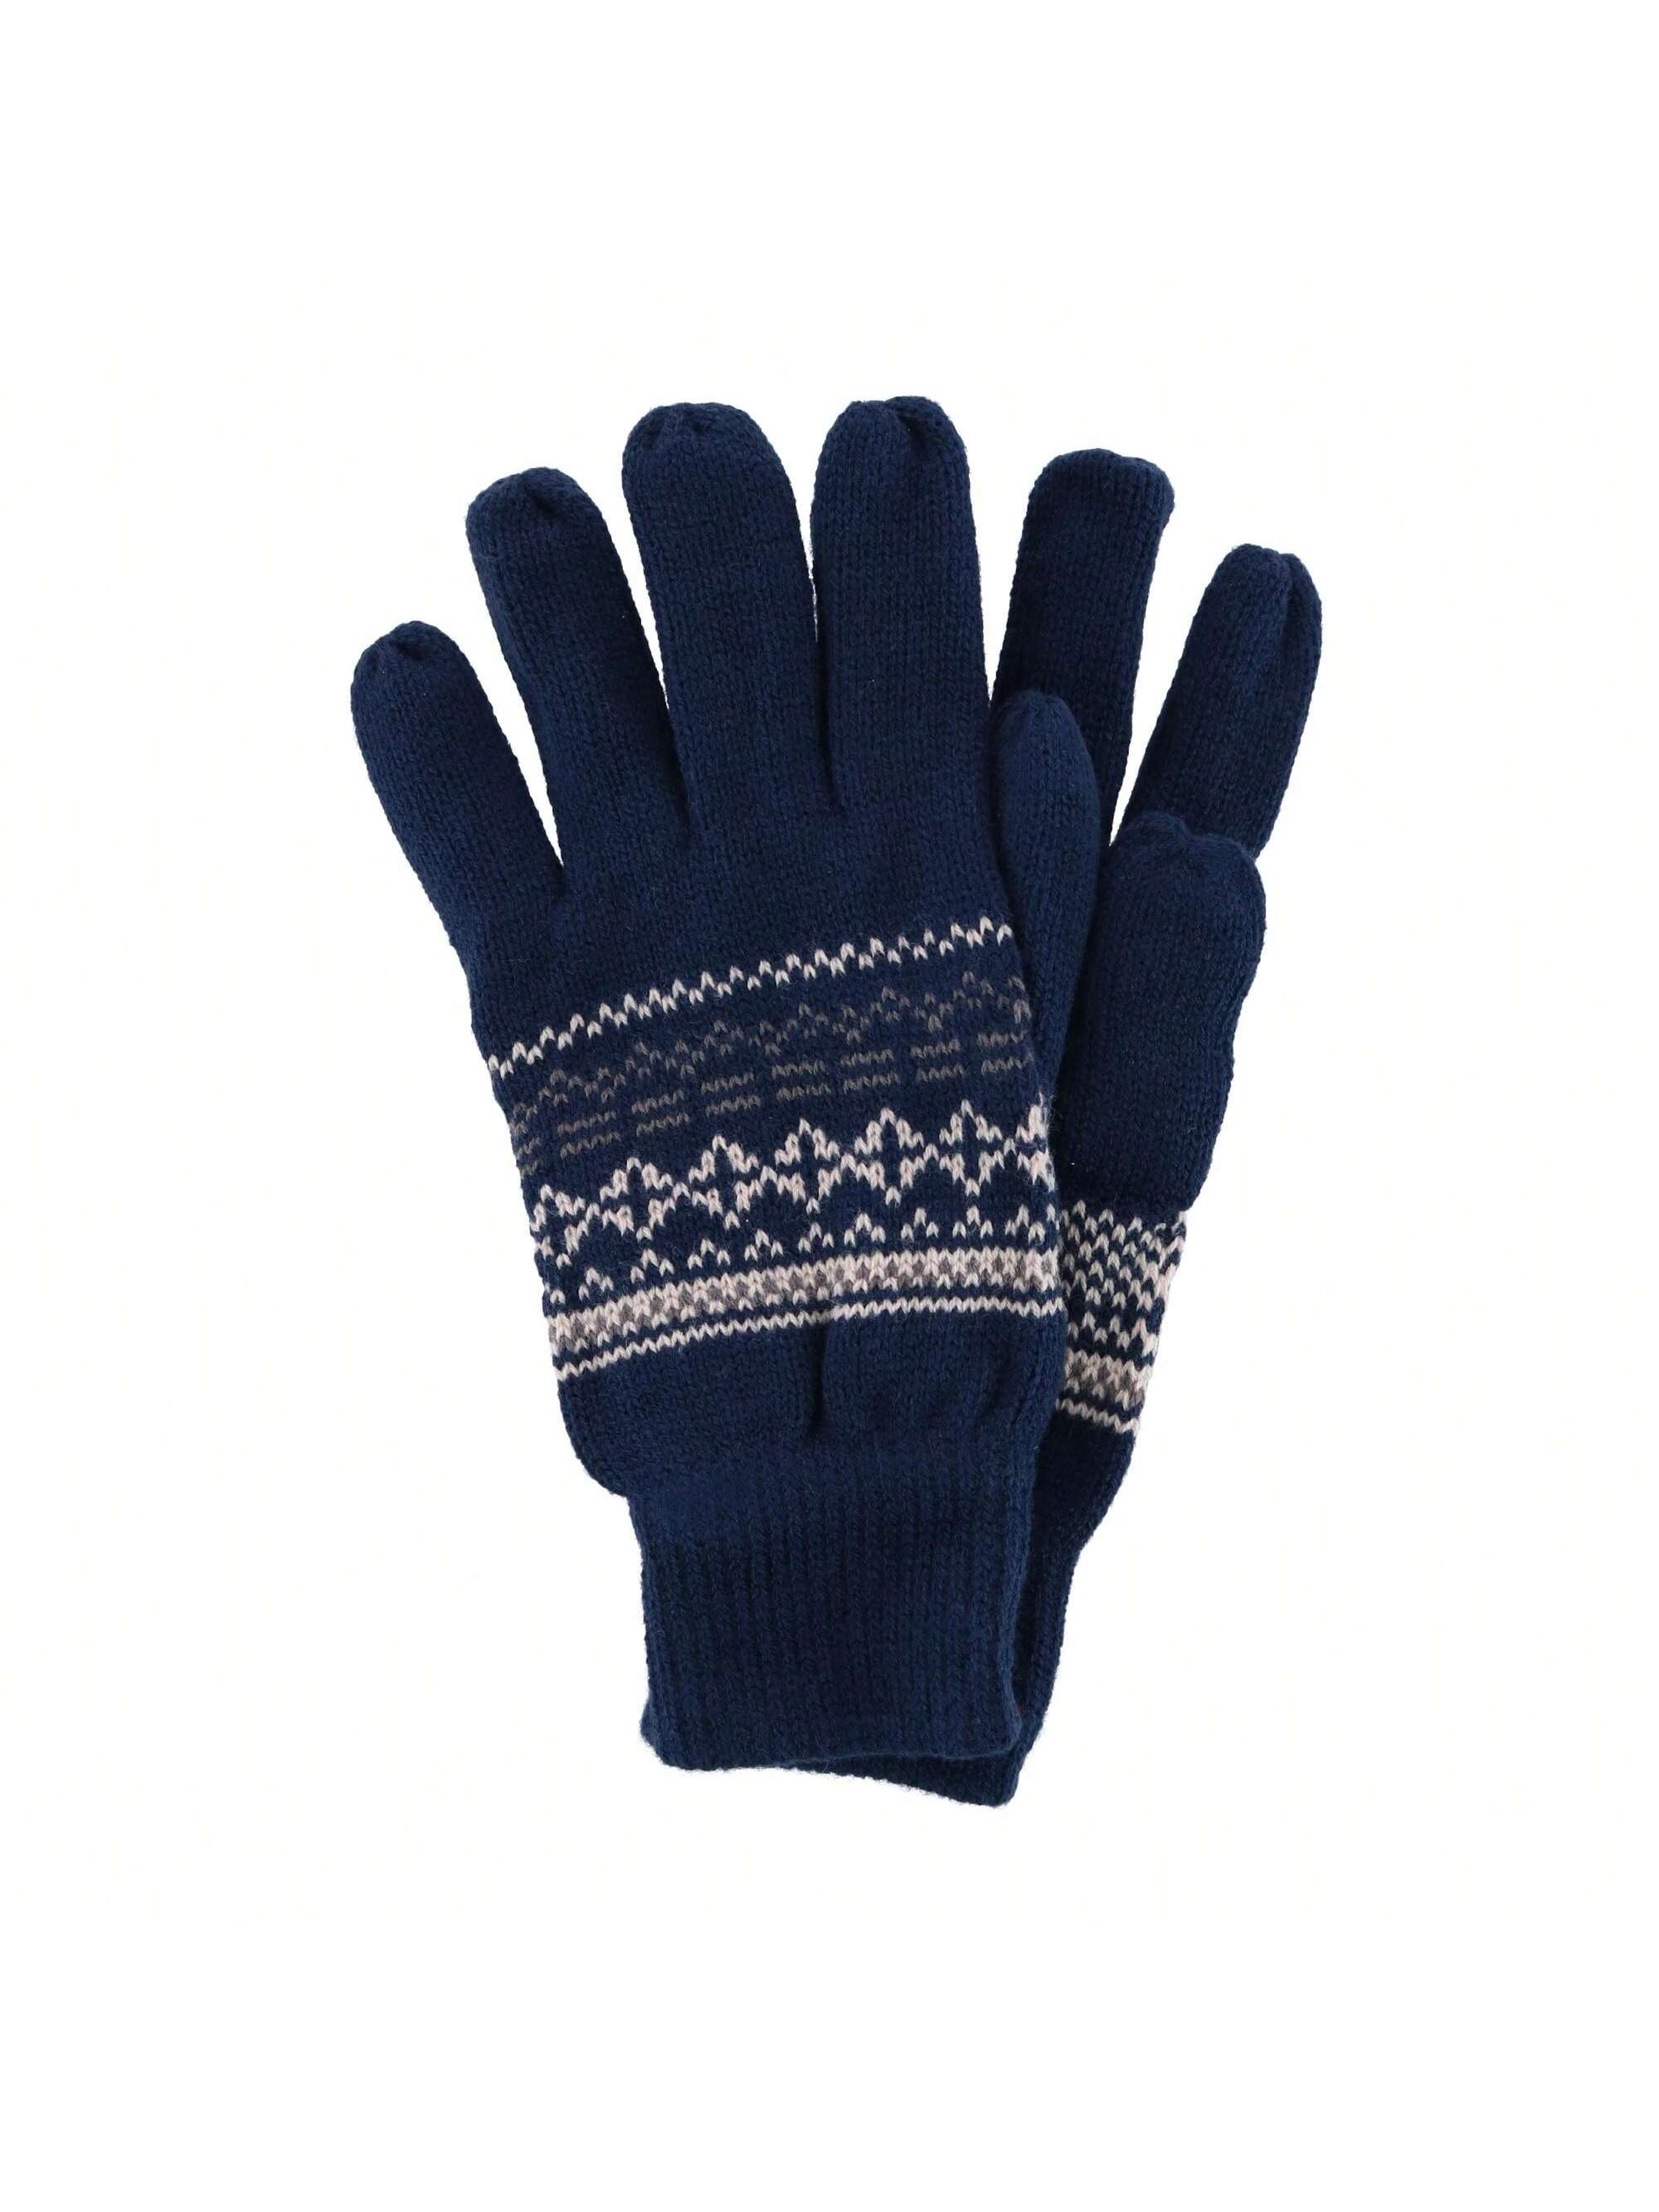 Мужские трикотажные перчатки CTM с зимним узором, темно-синий